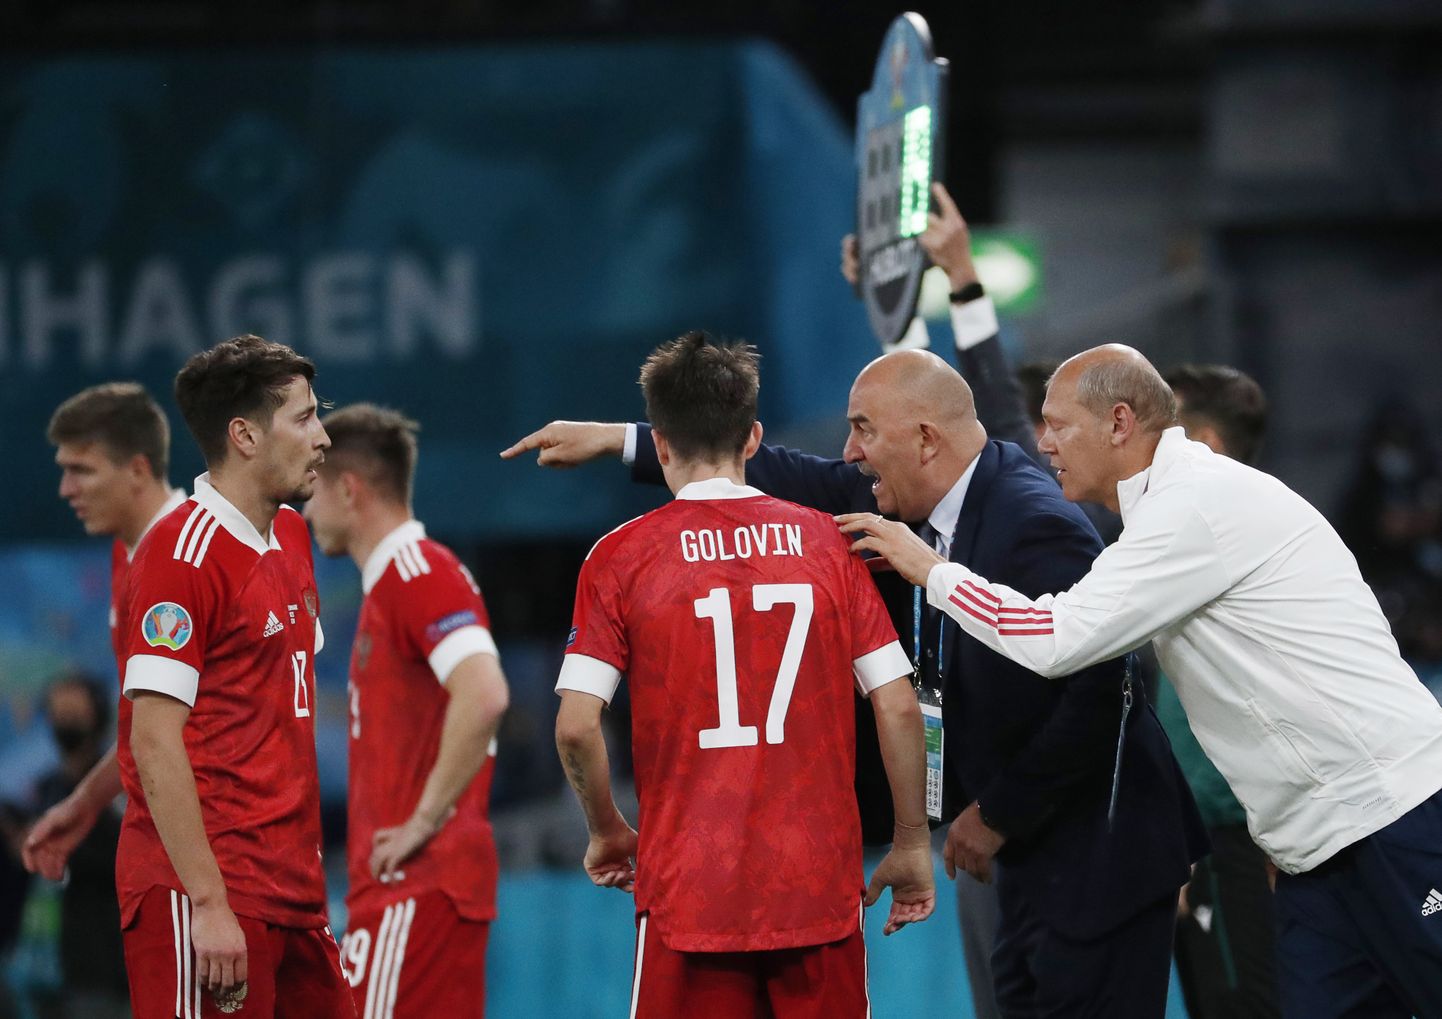 Venemaa jalgpallikoondise agoonia: peatreener Stanislav Tšeršessovi viimased õpetussõnad, viimased vahetused kohtumises Taaniga, mille Venemaa kaotas 1:4.